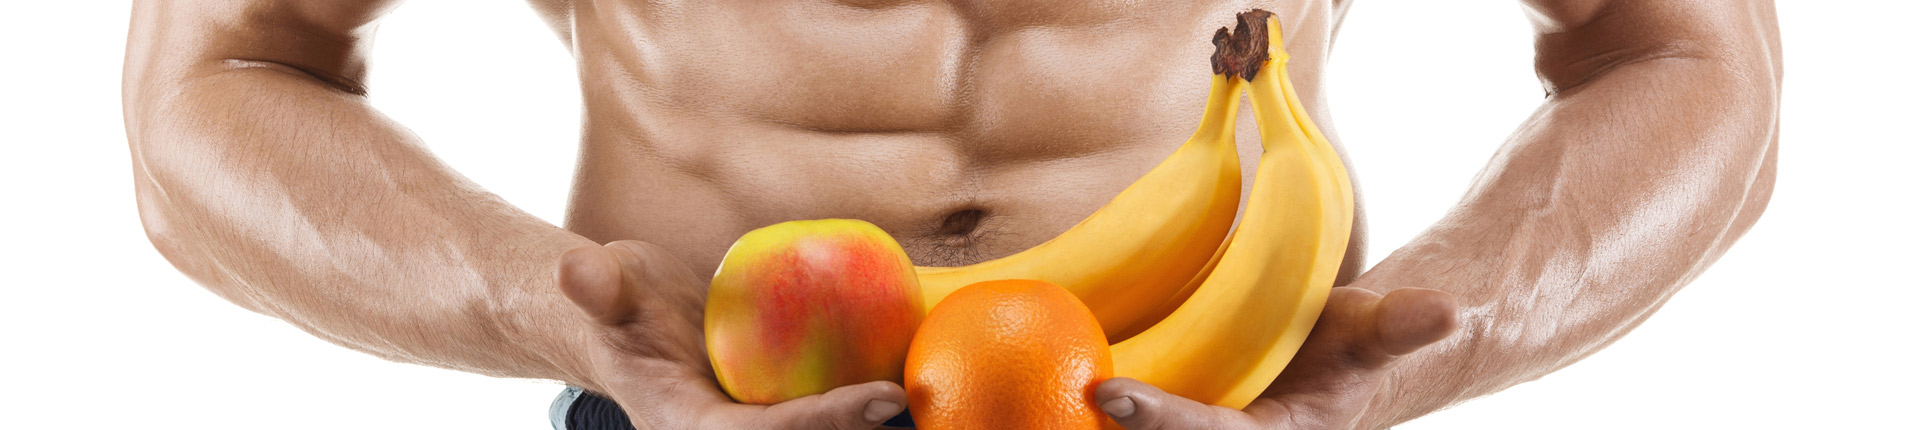 Owoce to kluczowy element diety? Jakie owoce wybrać?